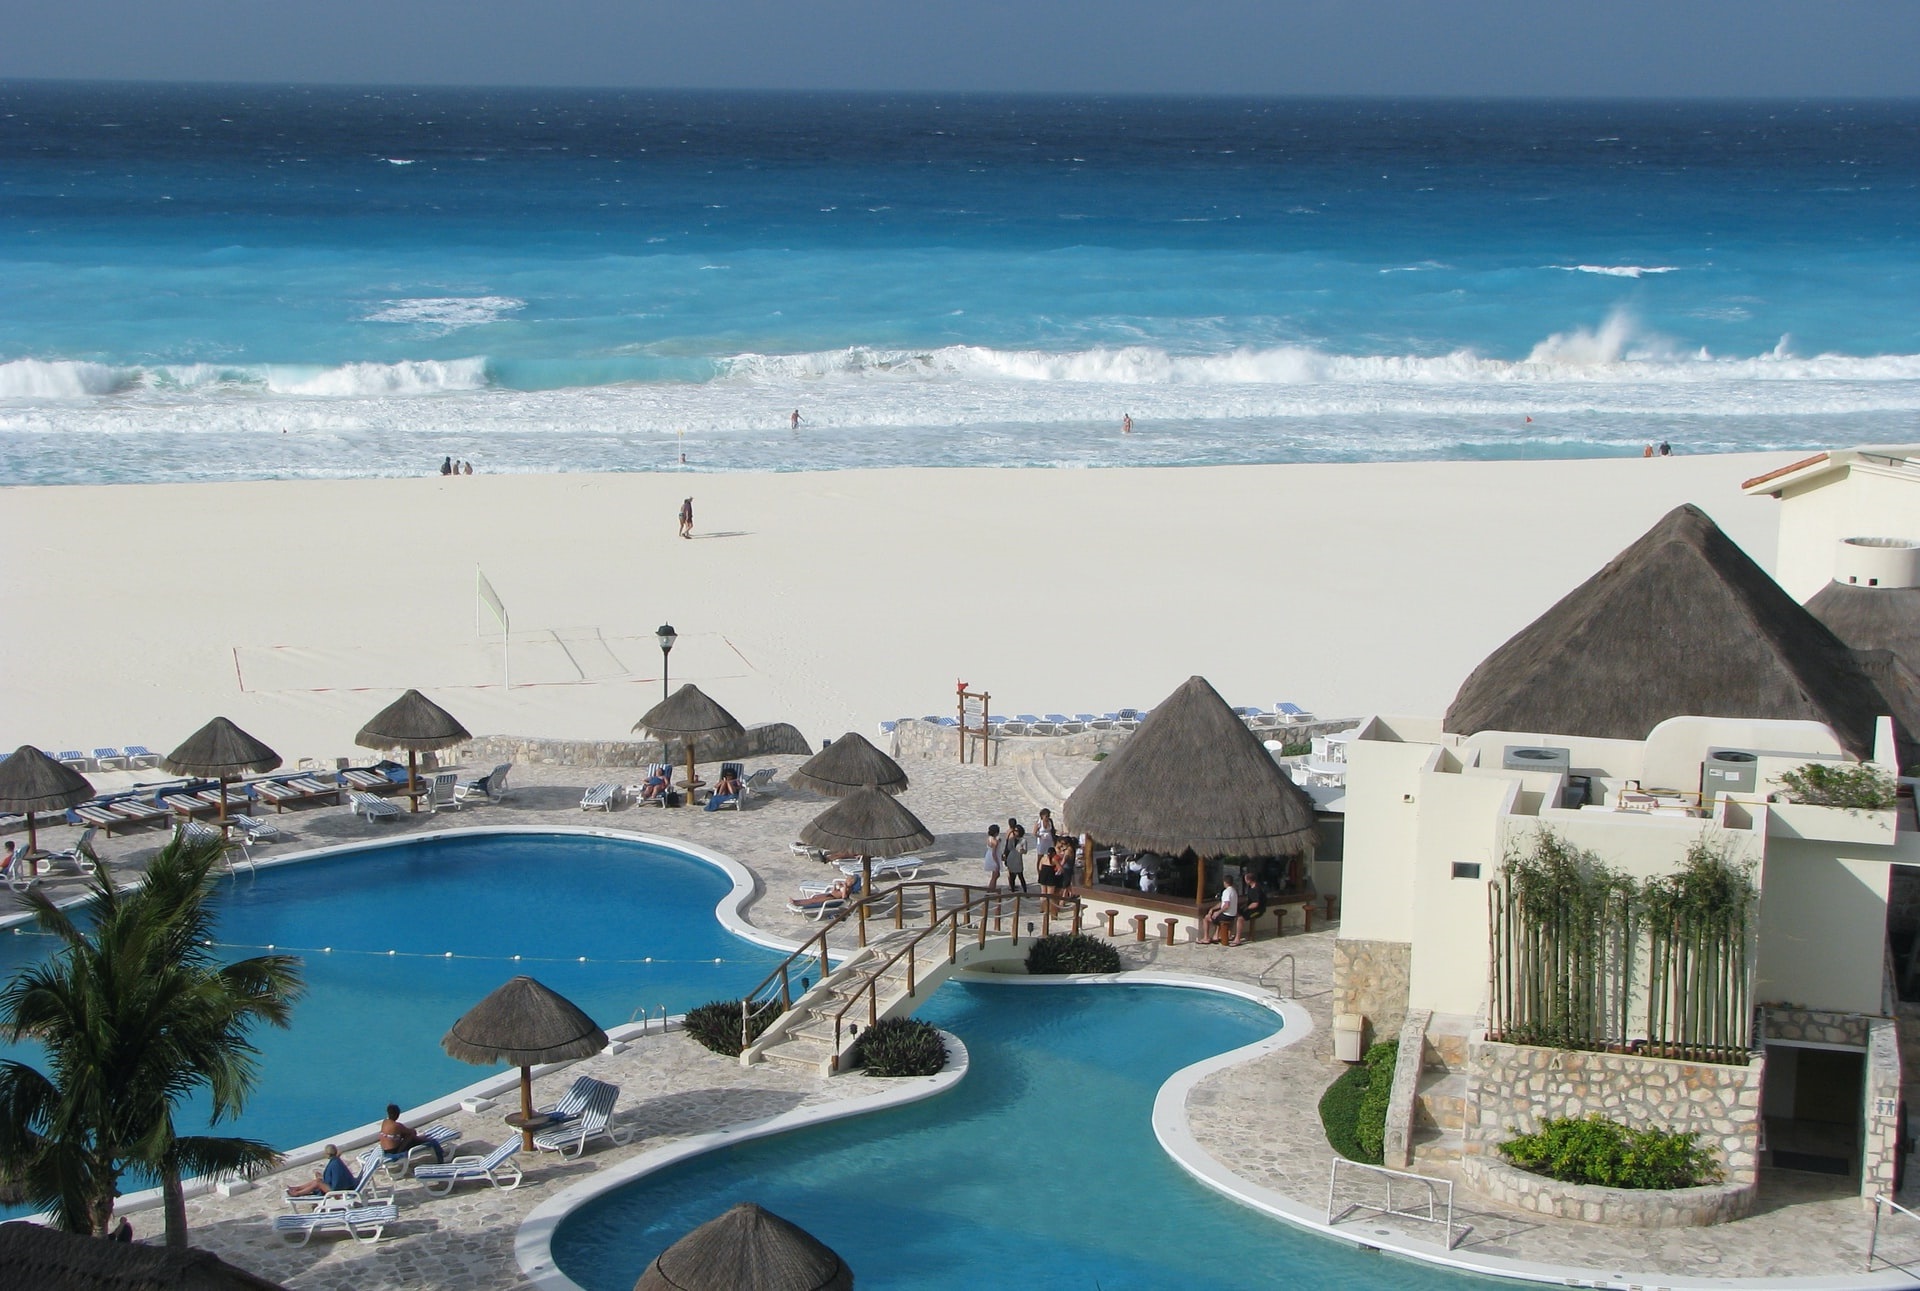 Découvrez nos séjours de luxe en vente privée - Cancun. VeryChic vous propose des voyages jusqu’à -70% dans les plus beaux hôtels du monde - Cancun